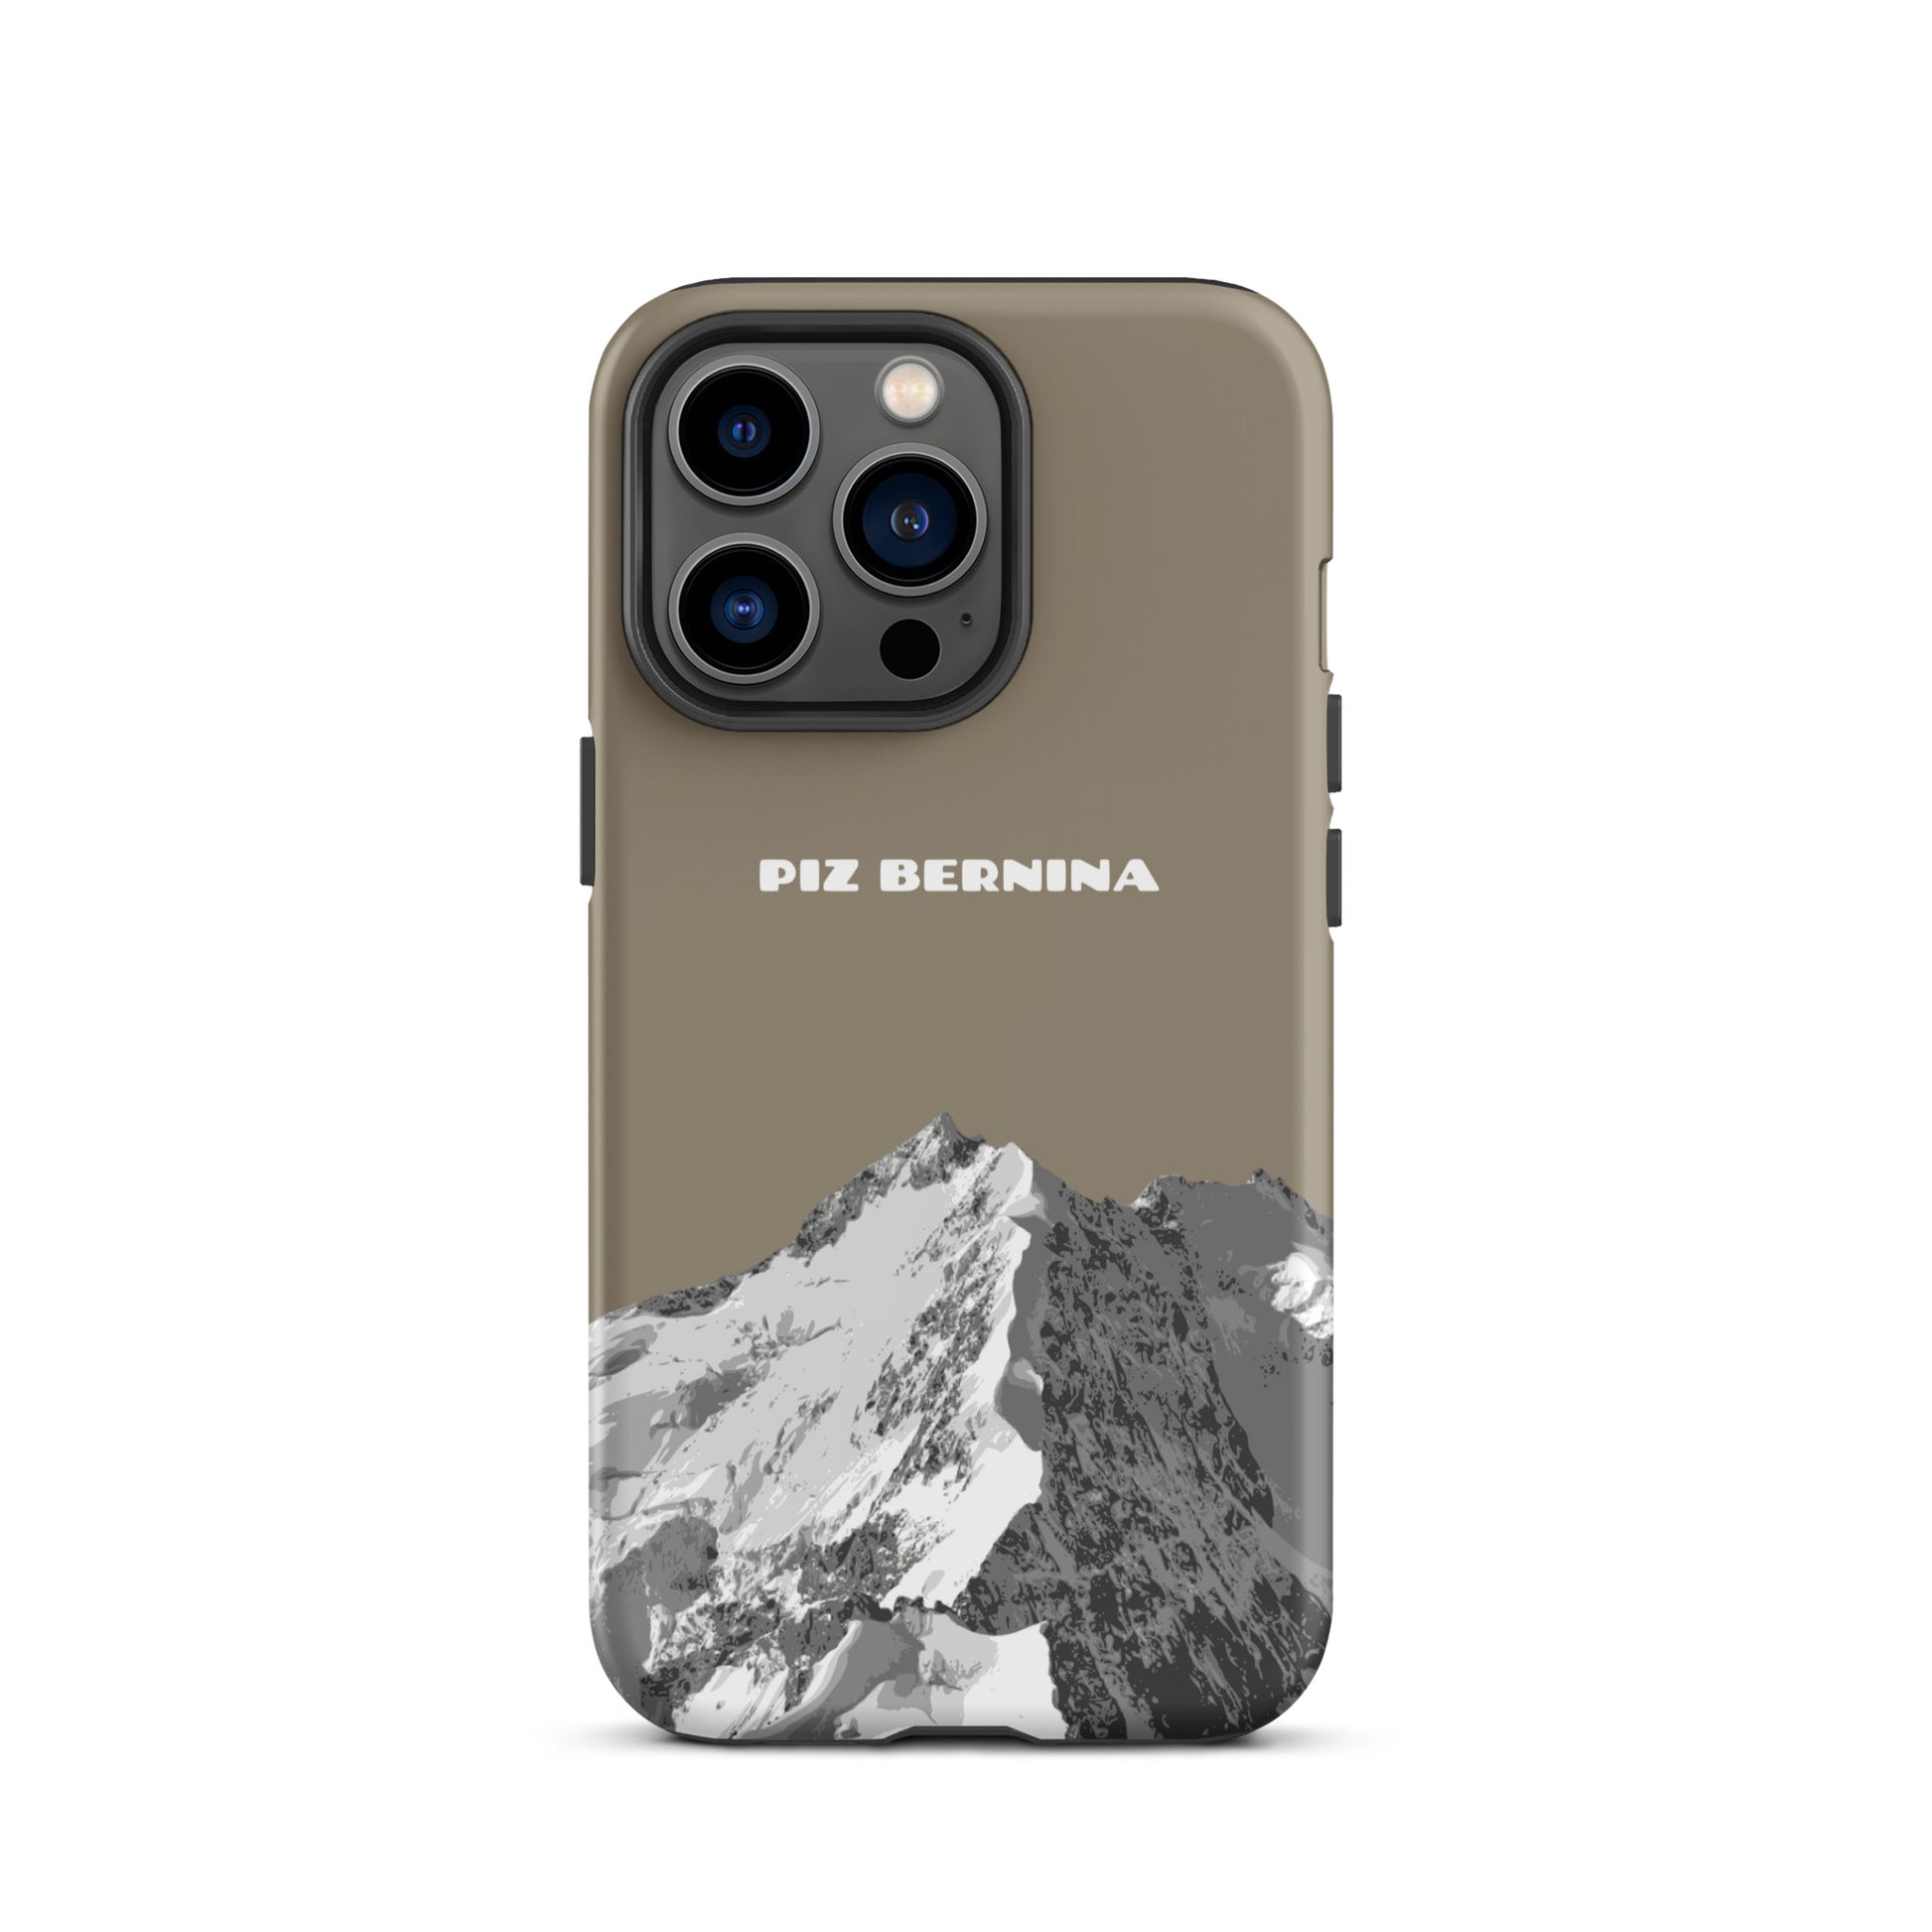 Hülle für das iPhone 13 Pro von Apple in der Farbe Graubraun, dass den Piz Bernina in Graubünden zeigt.